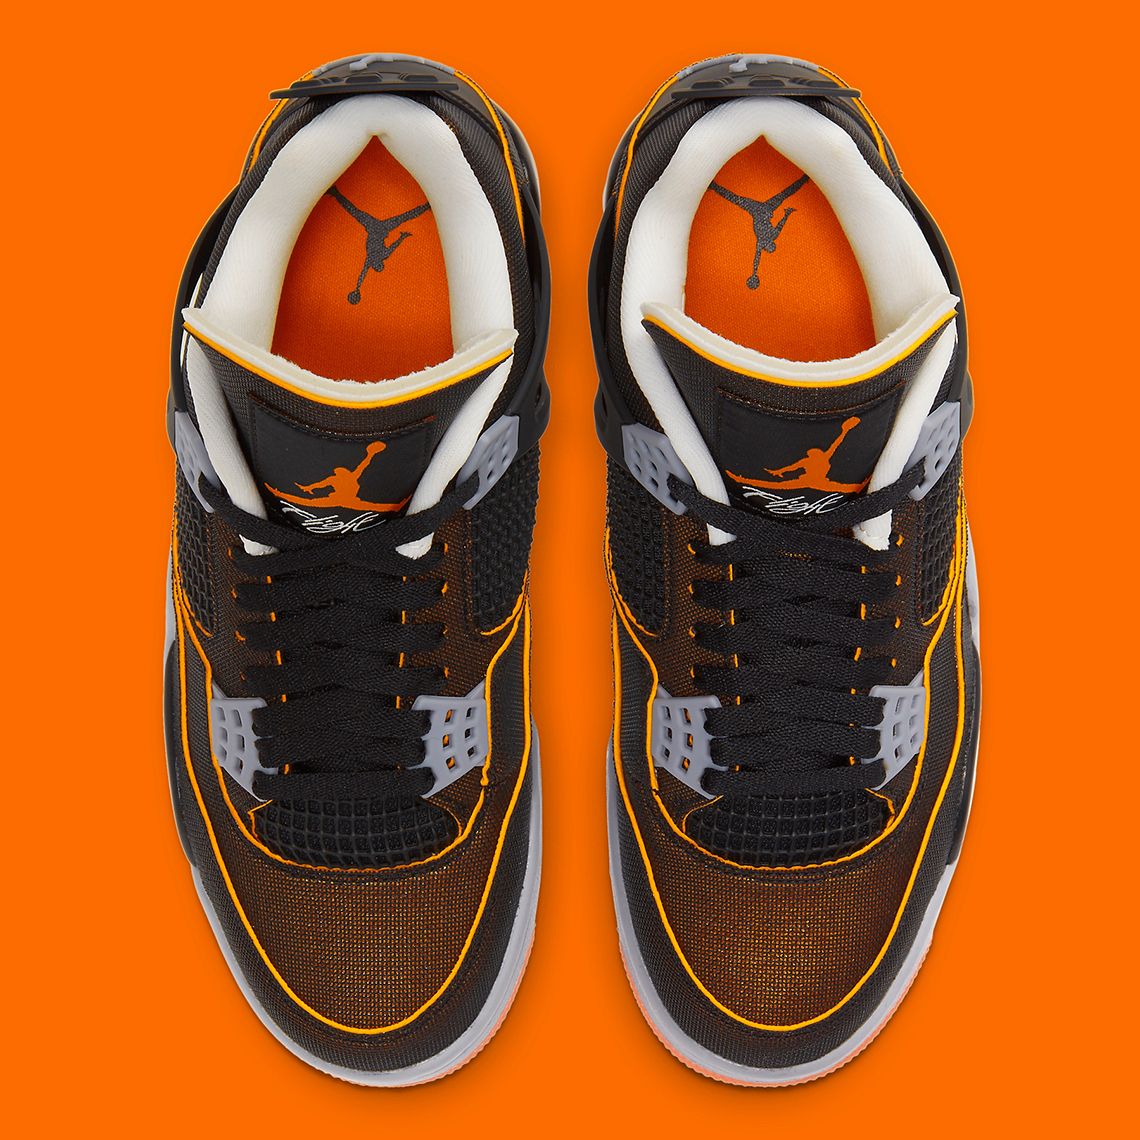 Jordan 6 black infrared retro sneaker tees